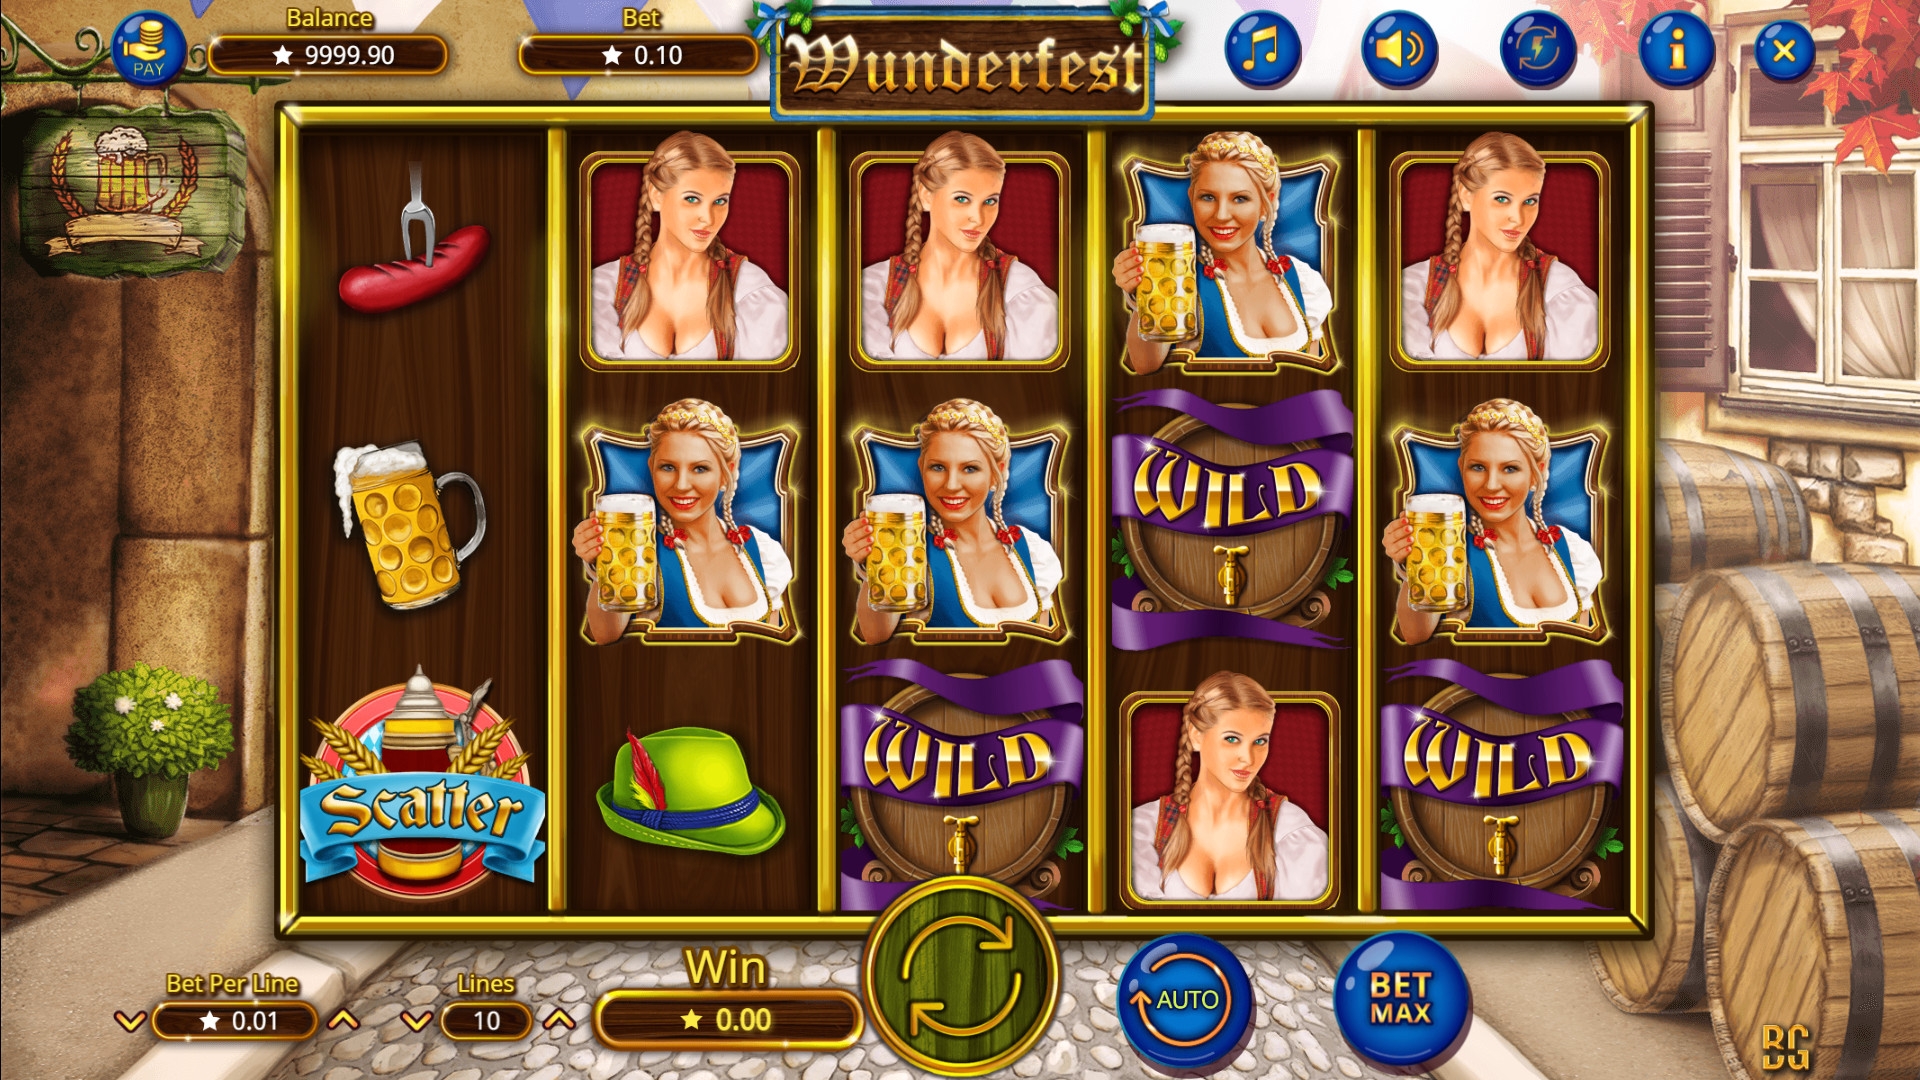 Wunderfest (Wunderfest) from category Slots